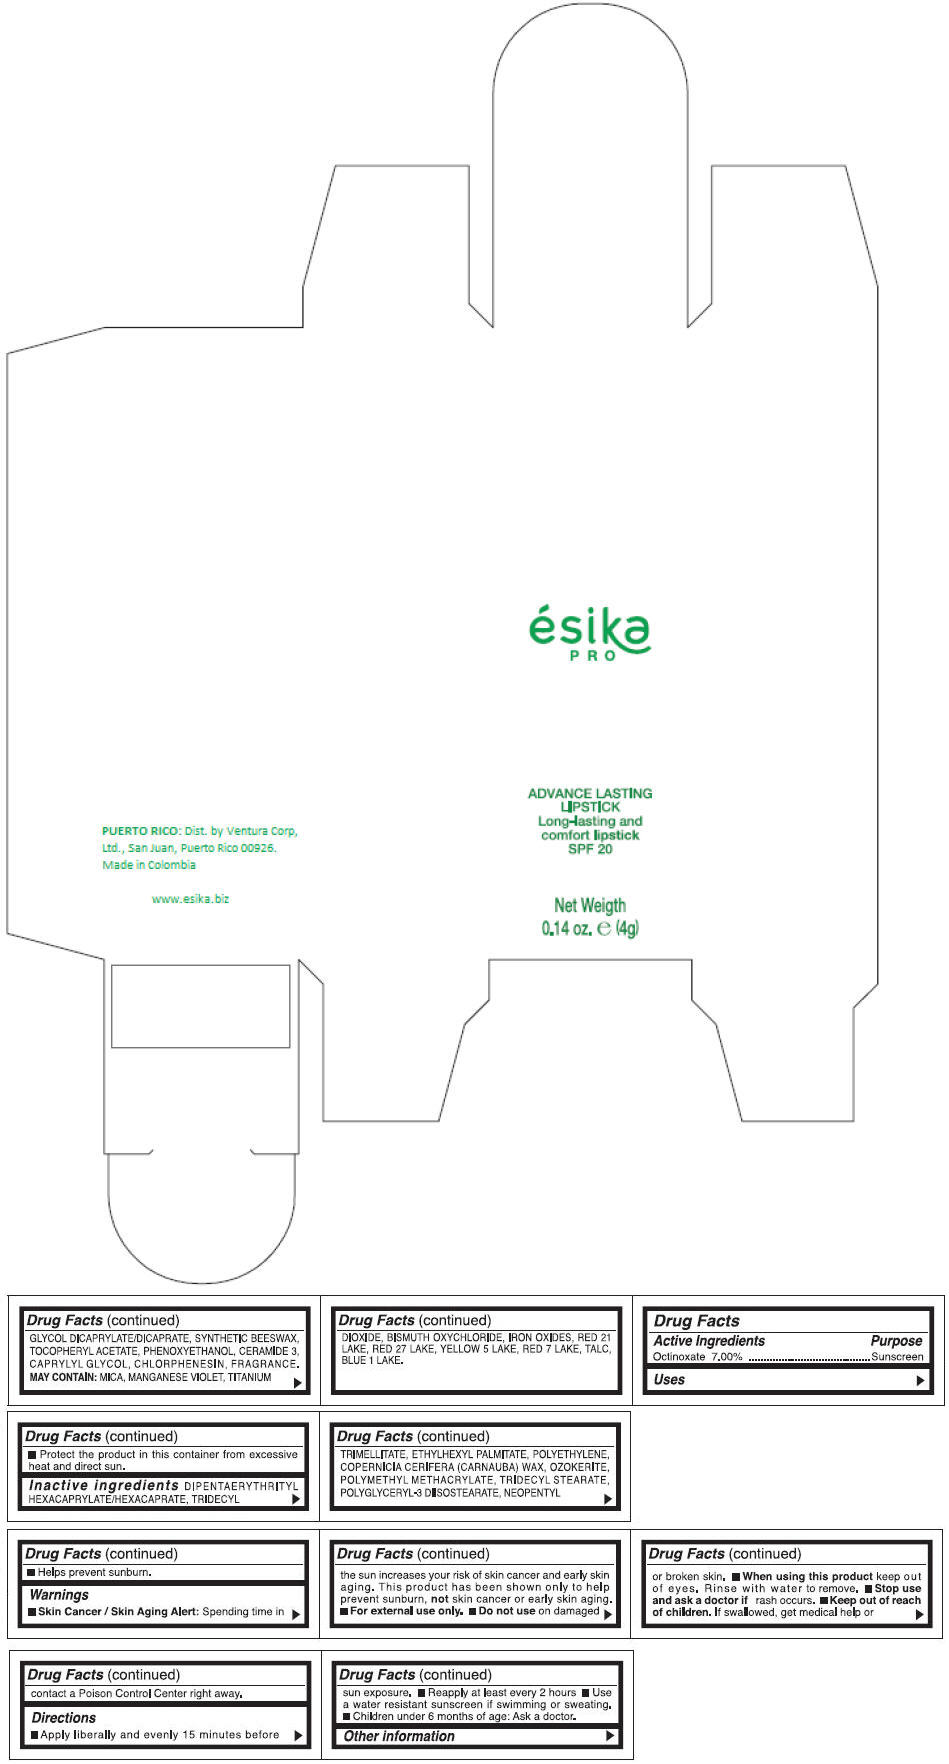 PRINCIPAL DISPLAY PANEL - 4 g Tube Box - (FUCSIA DELIRIO) - PINK